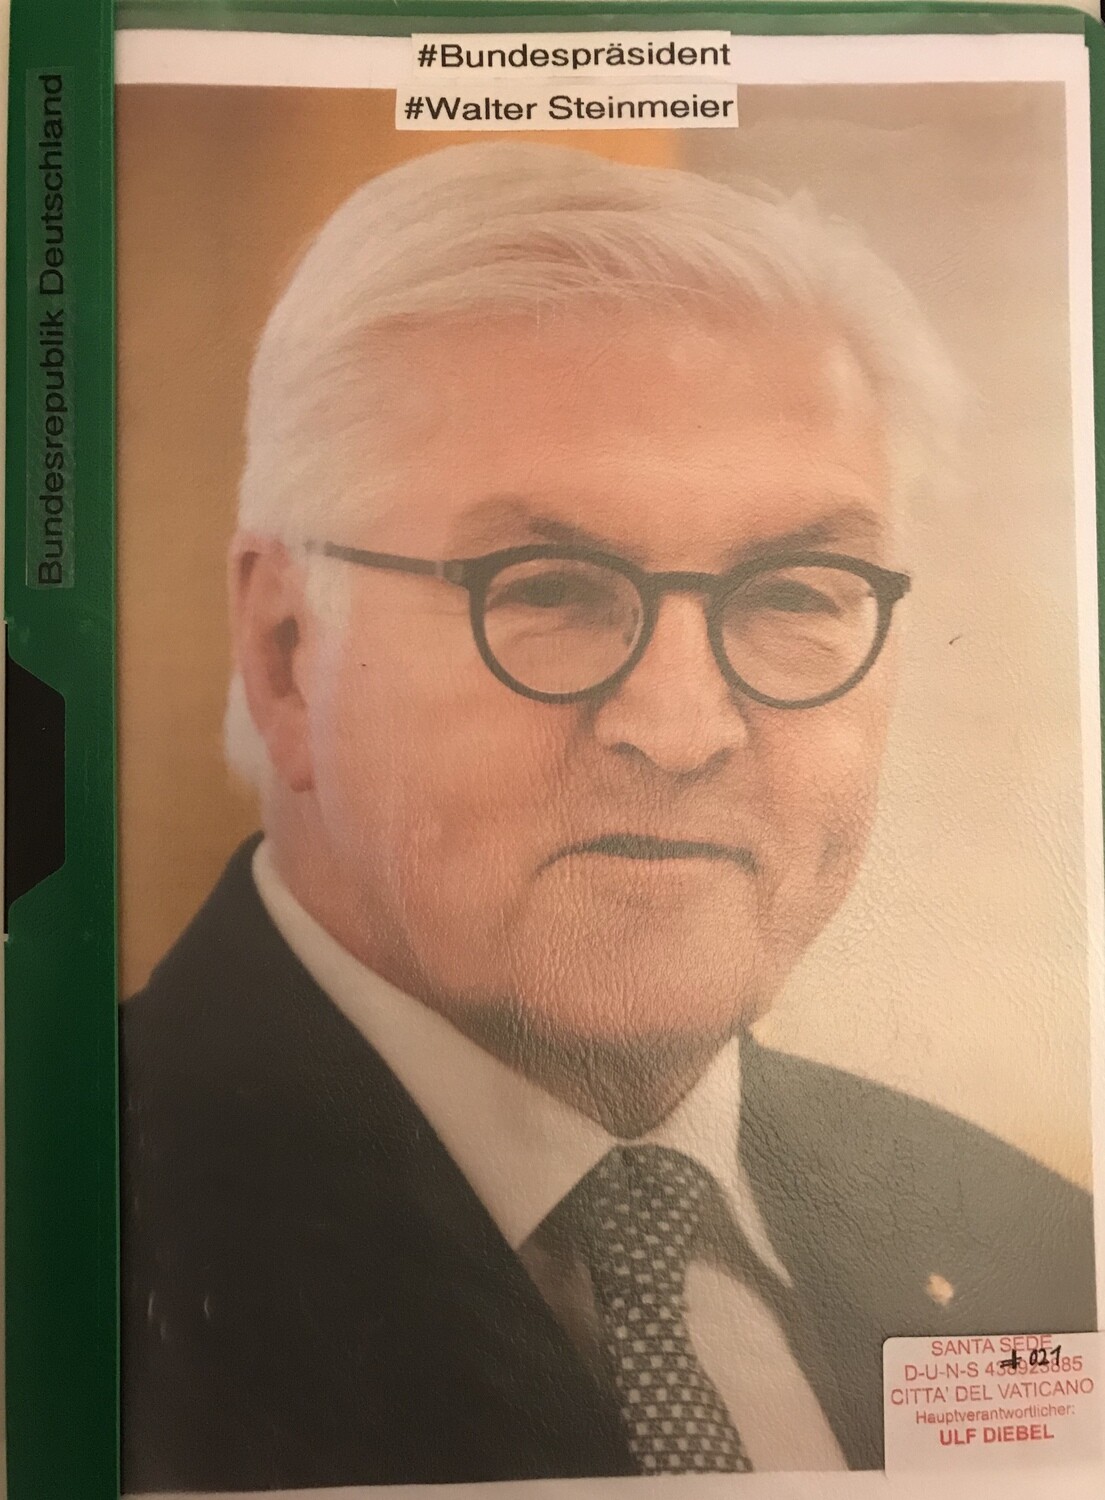 Bundespräsident Frank Walter Steinmeier